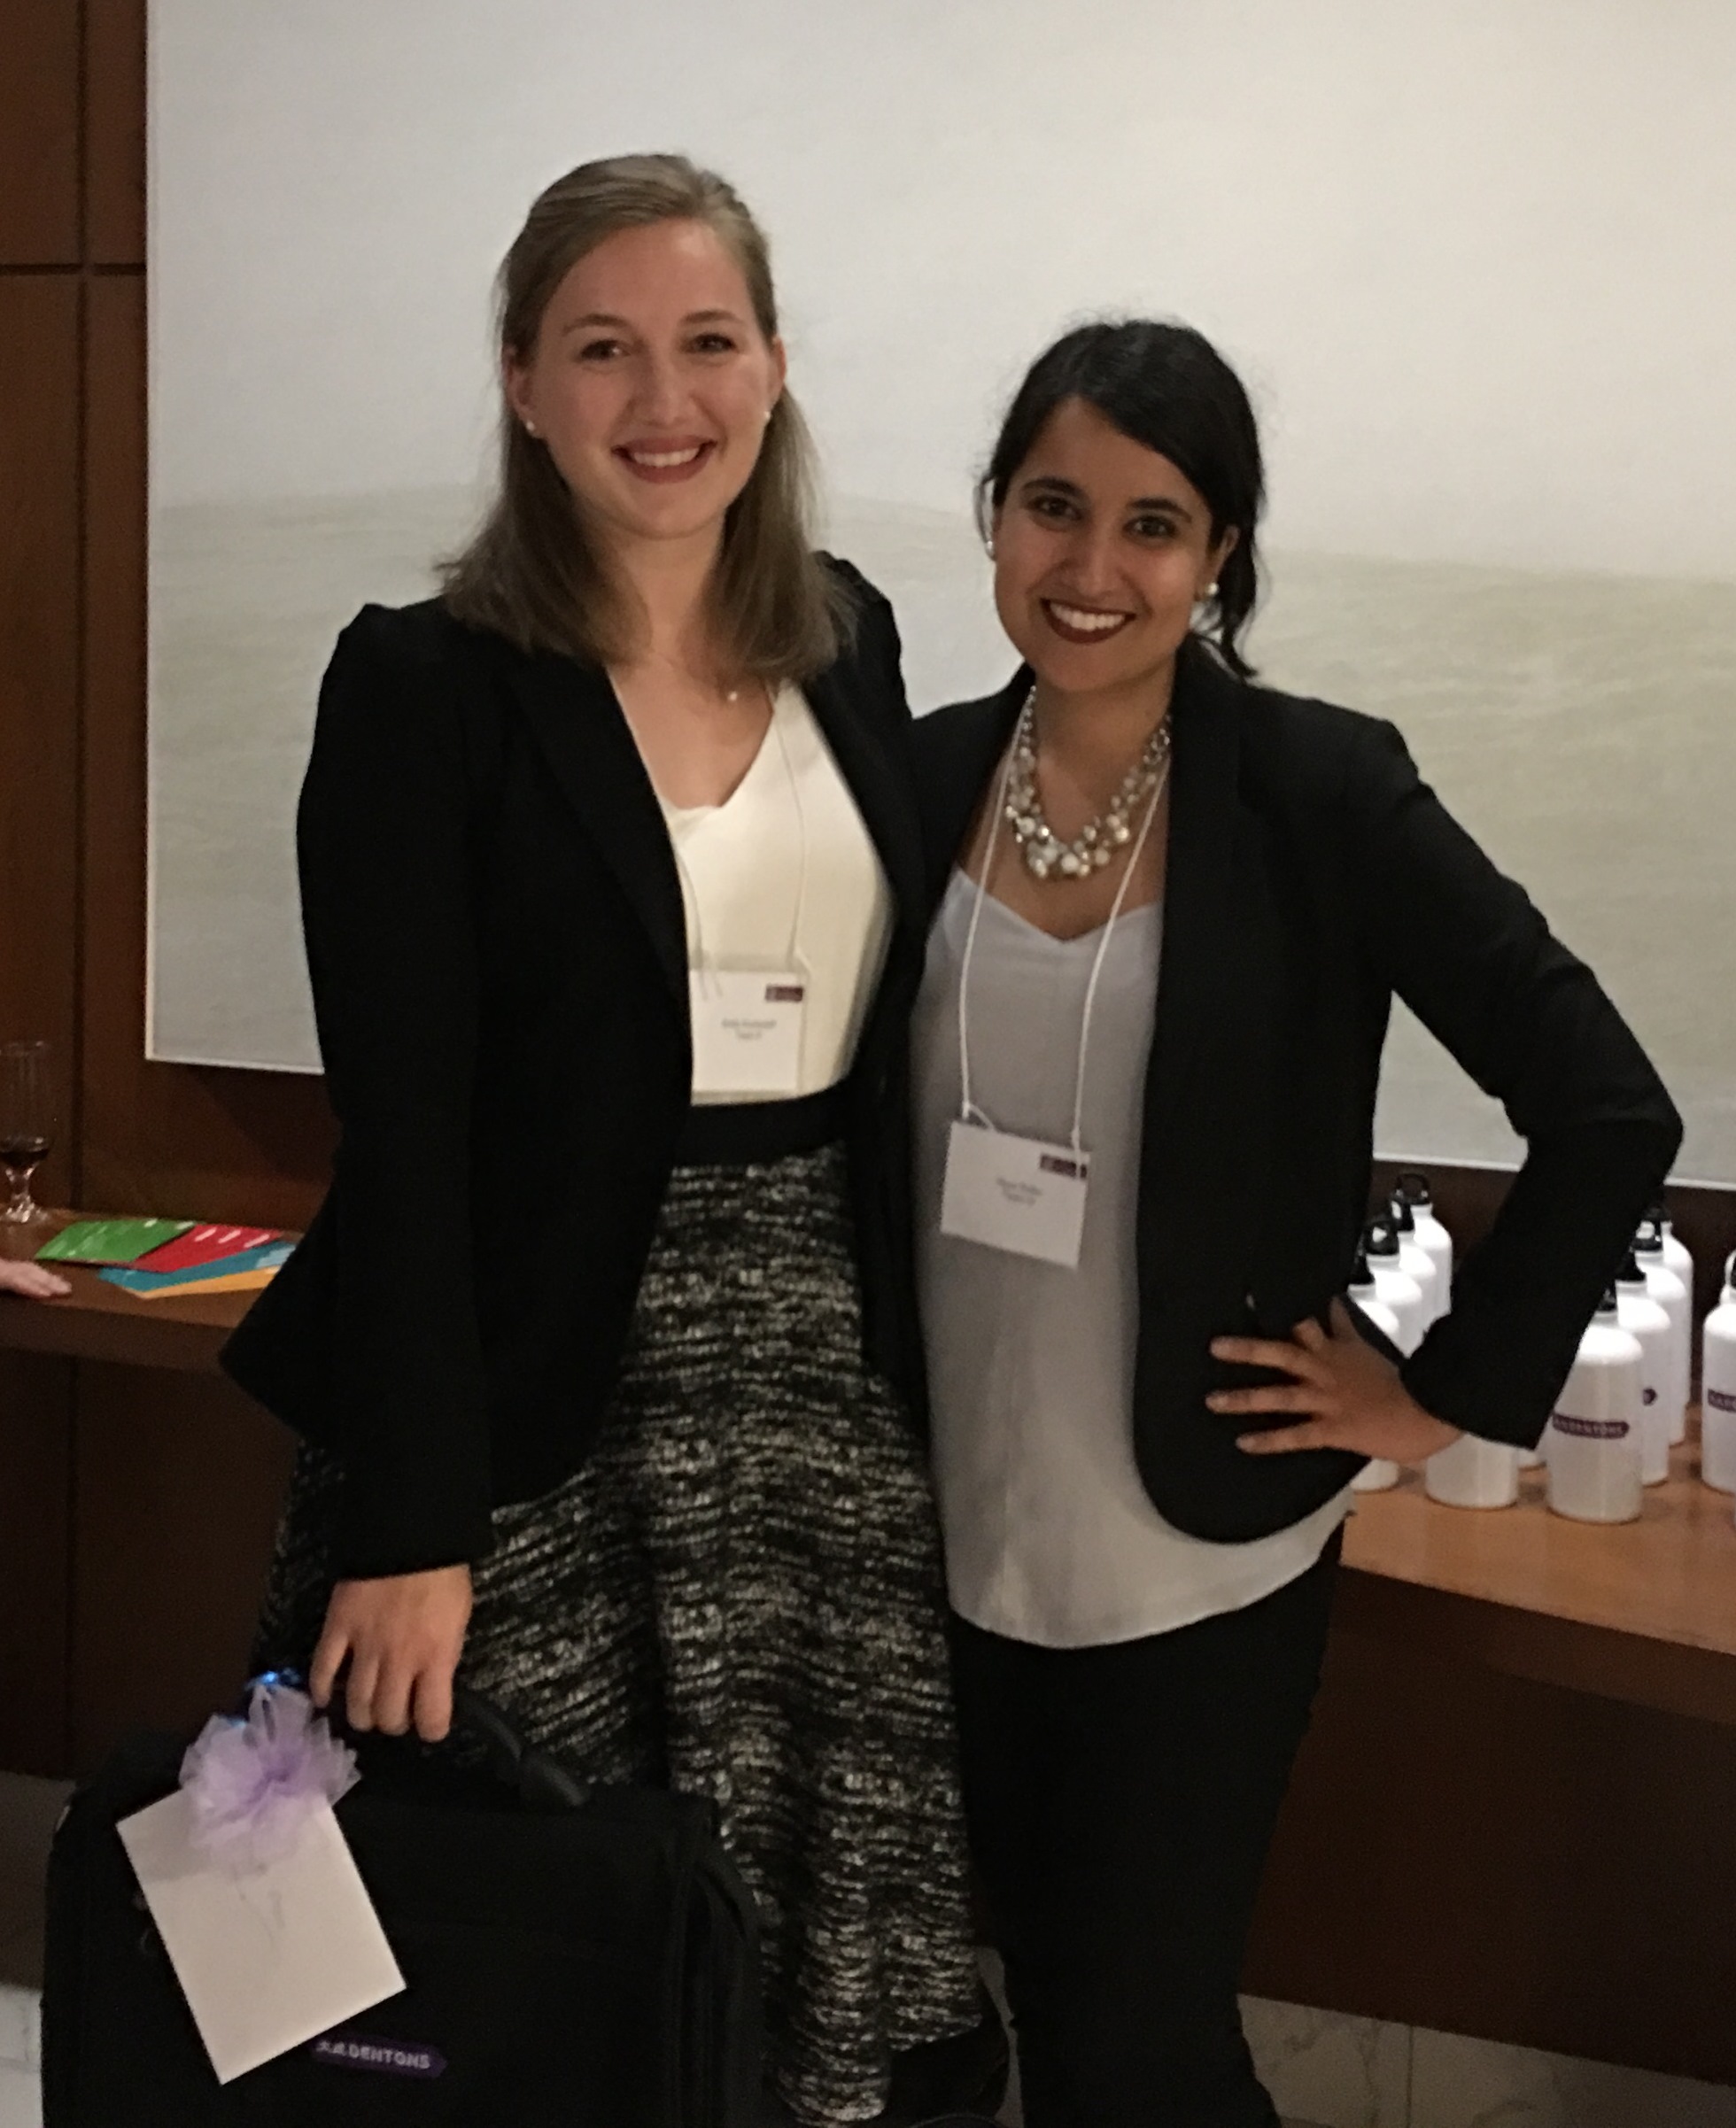 Ottawa negotiation competition winners Raya Sidhu and Emily Kostandoff 